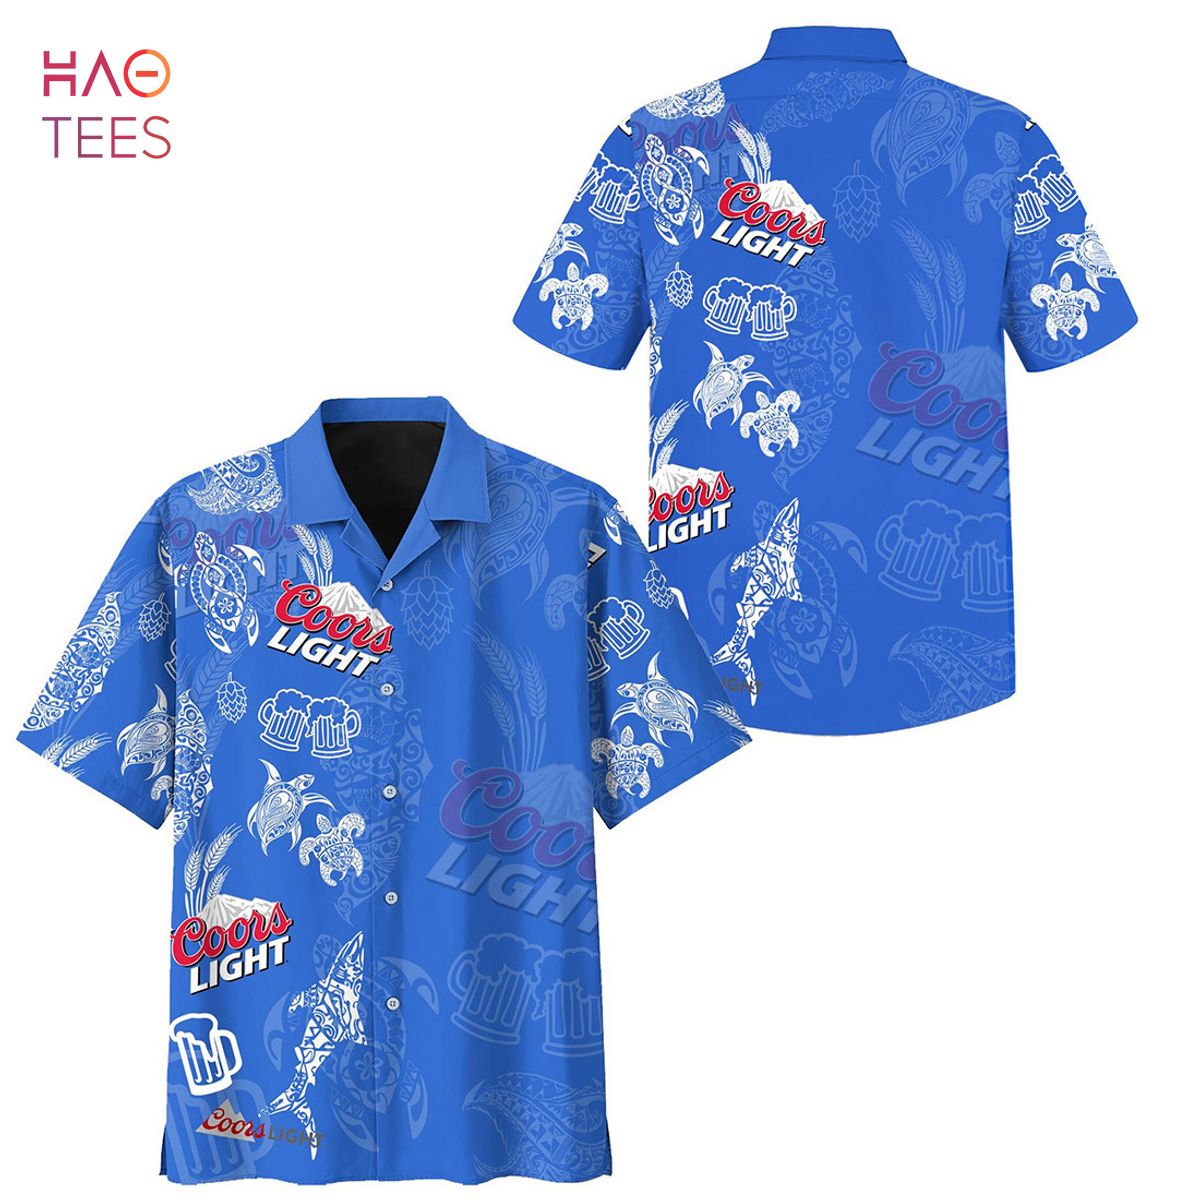 Coors Light Hawaiian Shirt Gift For Beach Trip